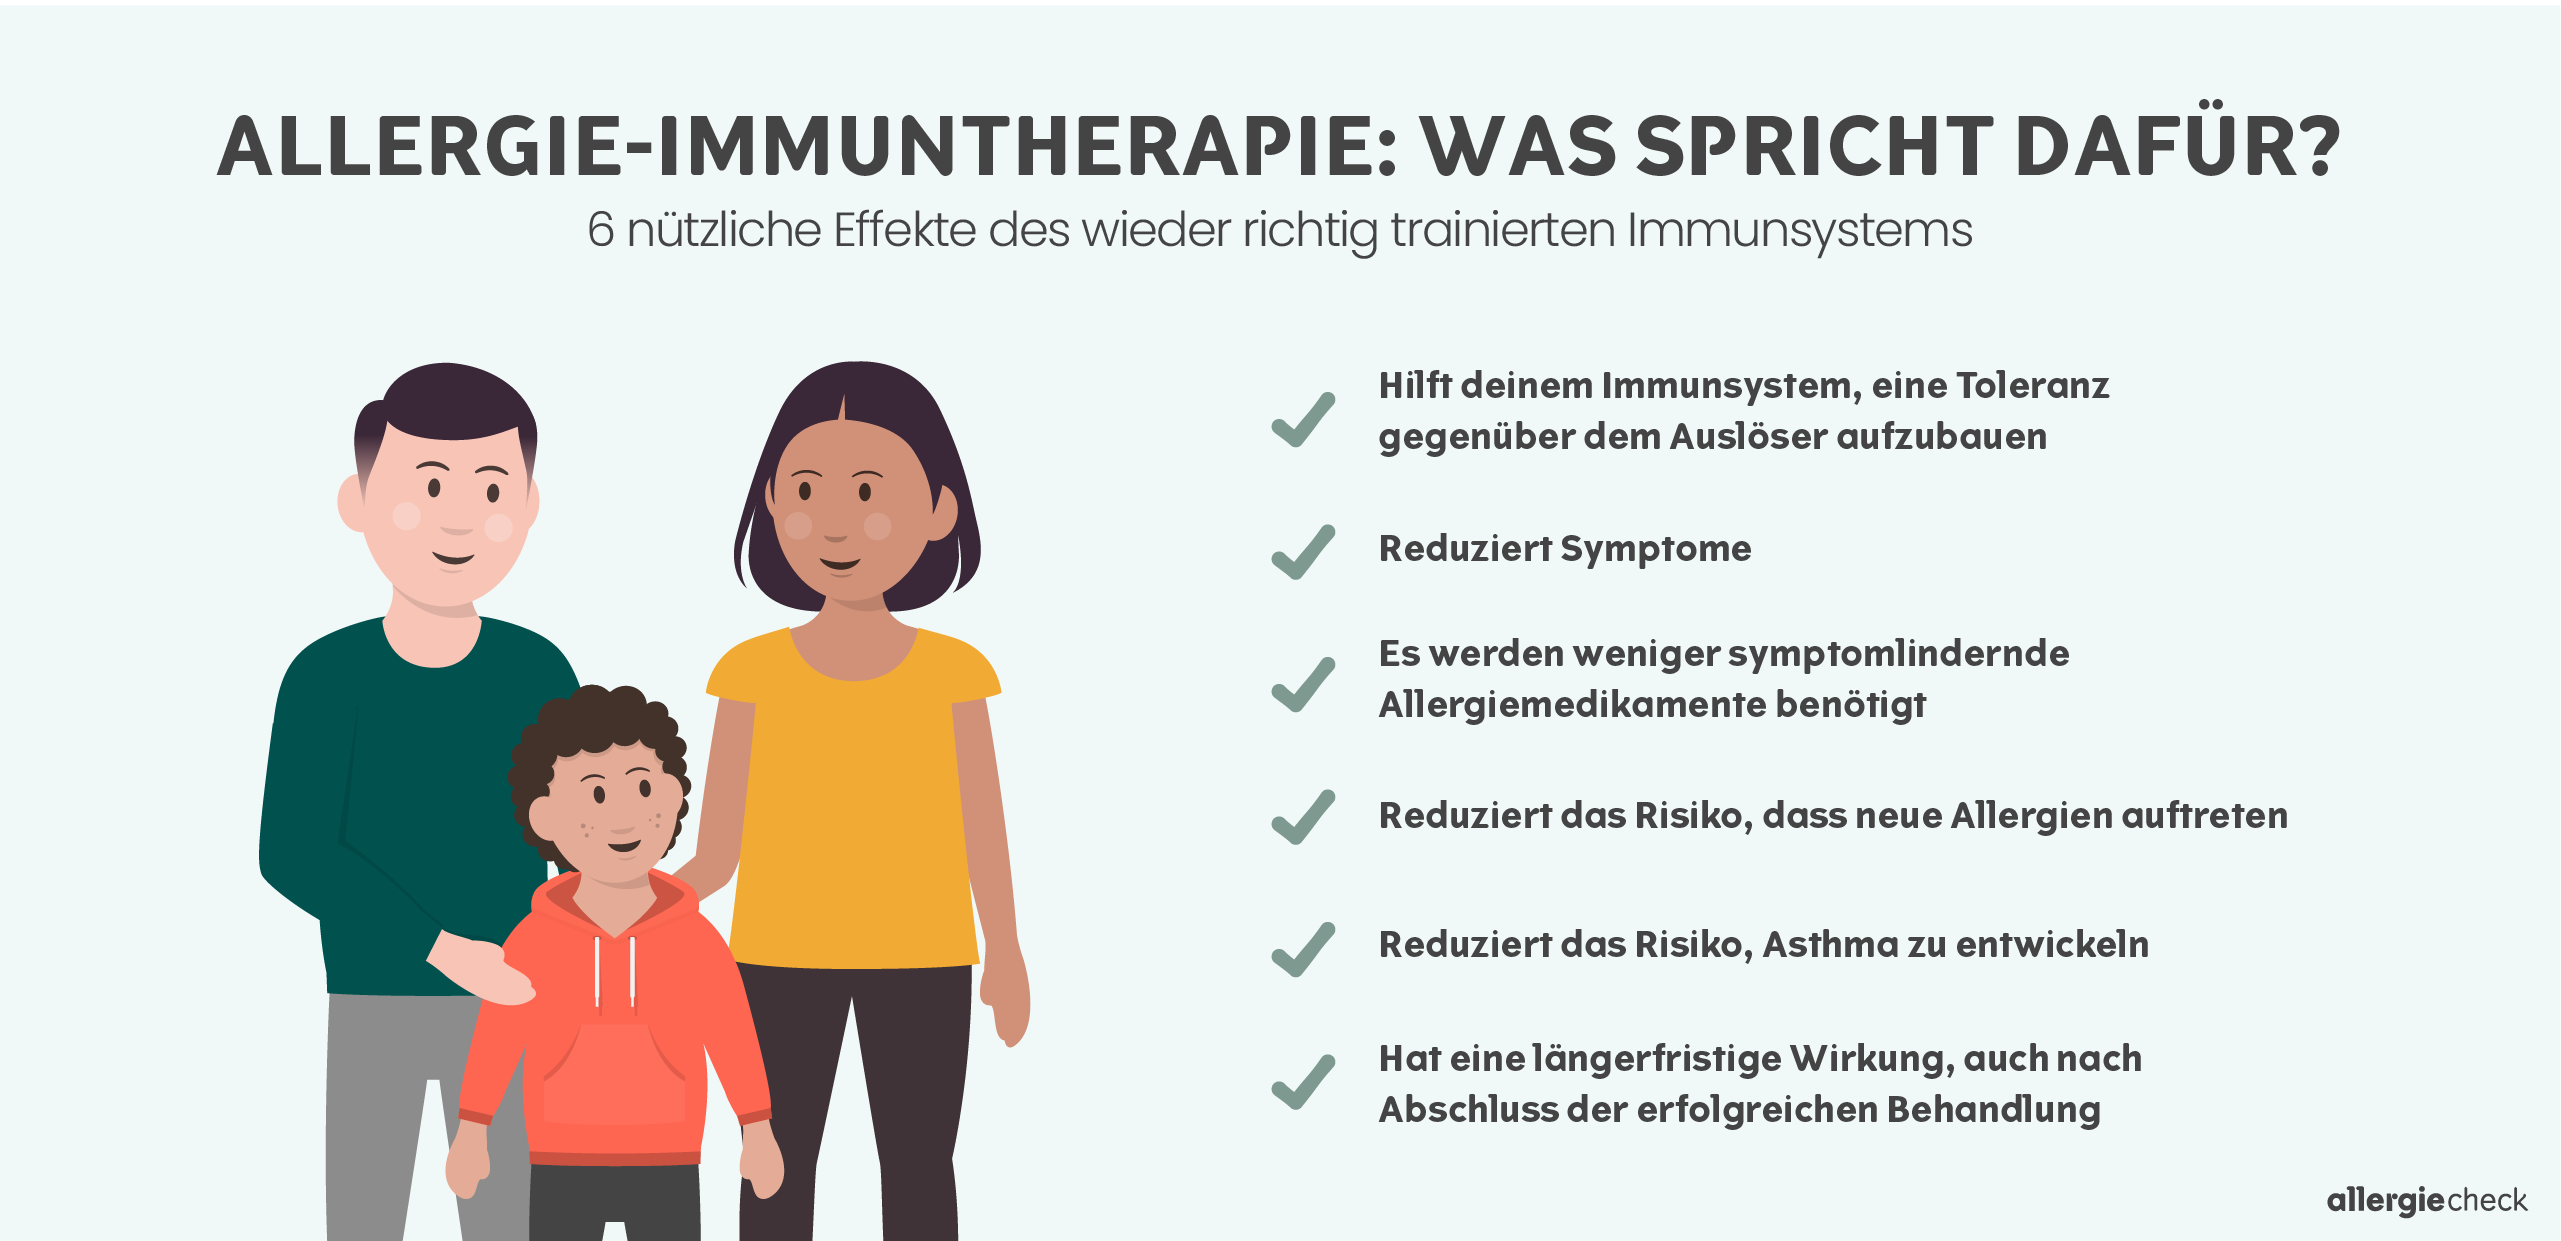 Infografik über die Allergie-Immuntherapie (auch Hyposensibilisierung oder Desensibilisierung bei Allergien genannt), bei der das Immunsystem wieder richtig trainiert wird. Die Infografik wird unten detailliert beschrieben.